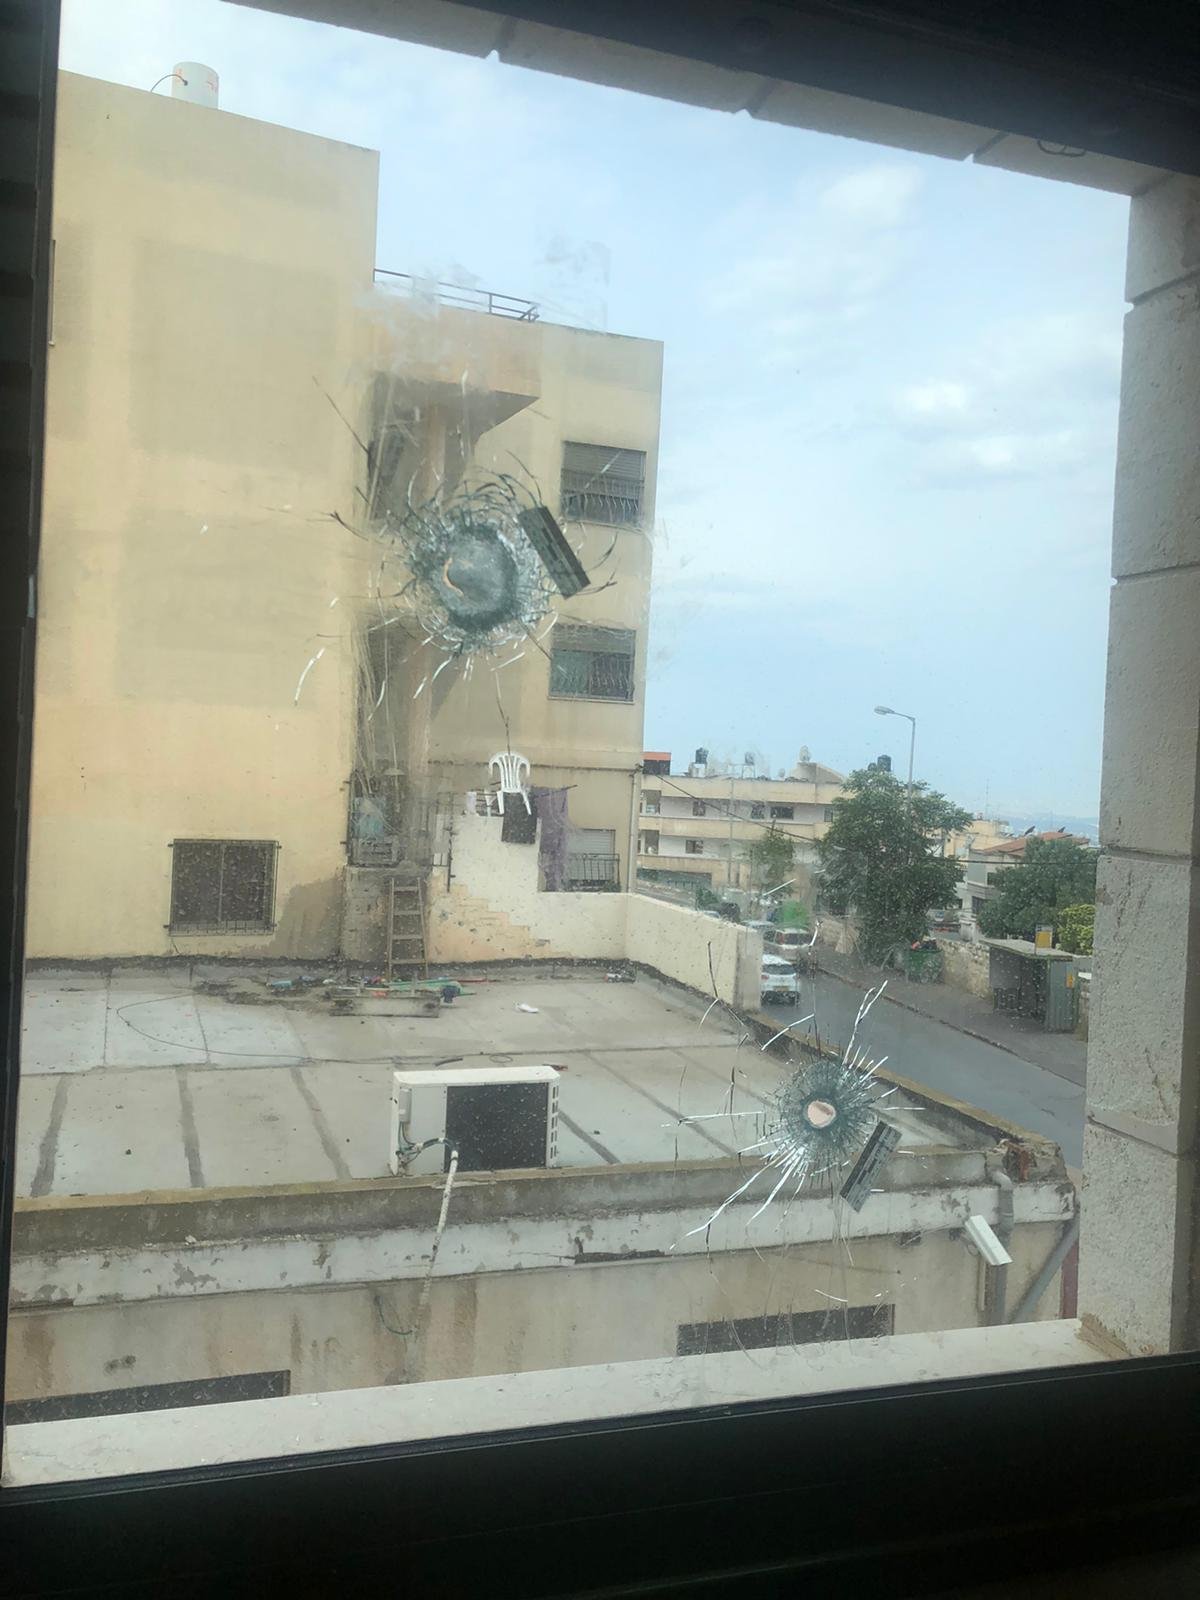 الناصرة: اطلاق رصاص تجاه بناية اسفر عن اضرارٍ مادية-0